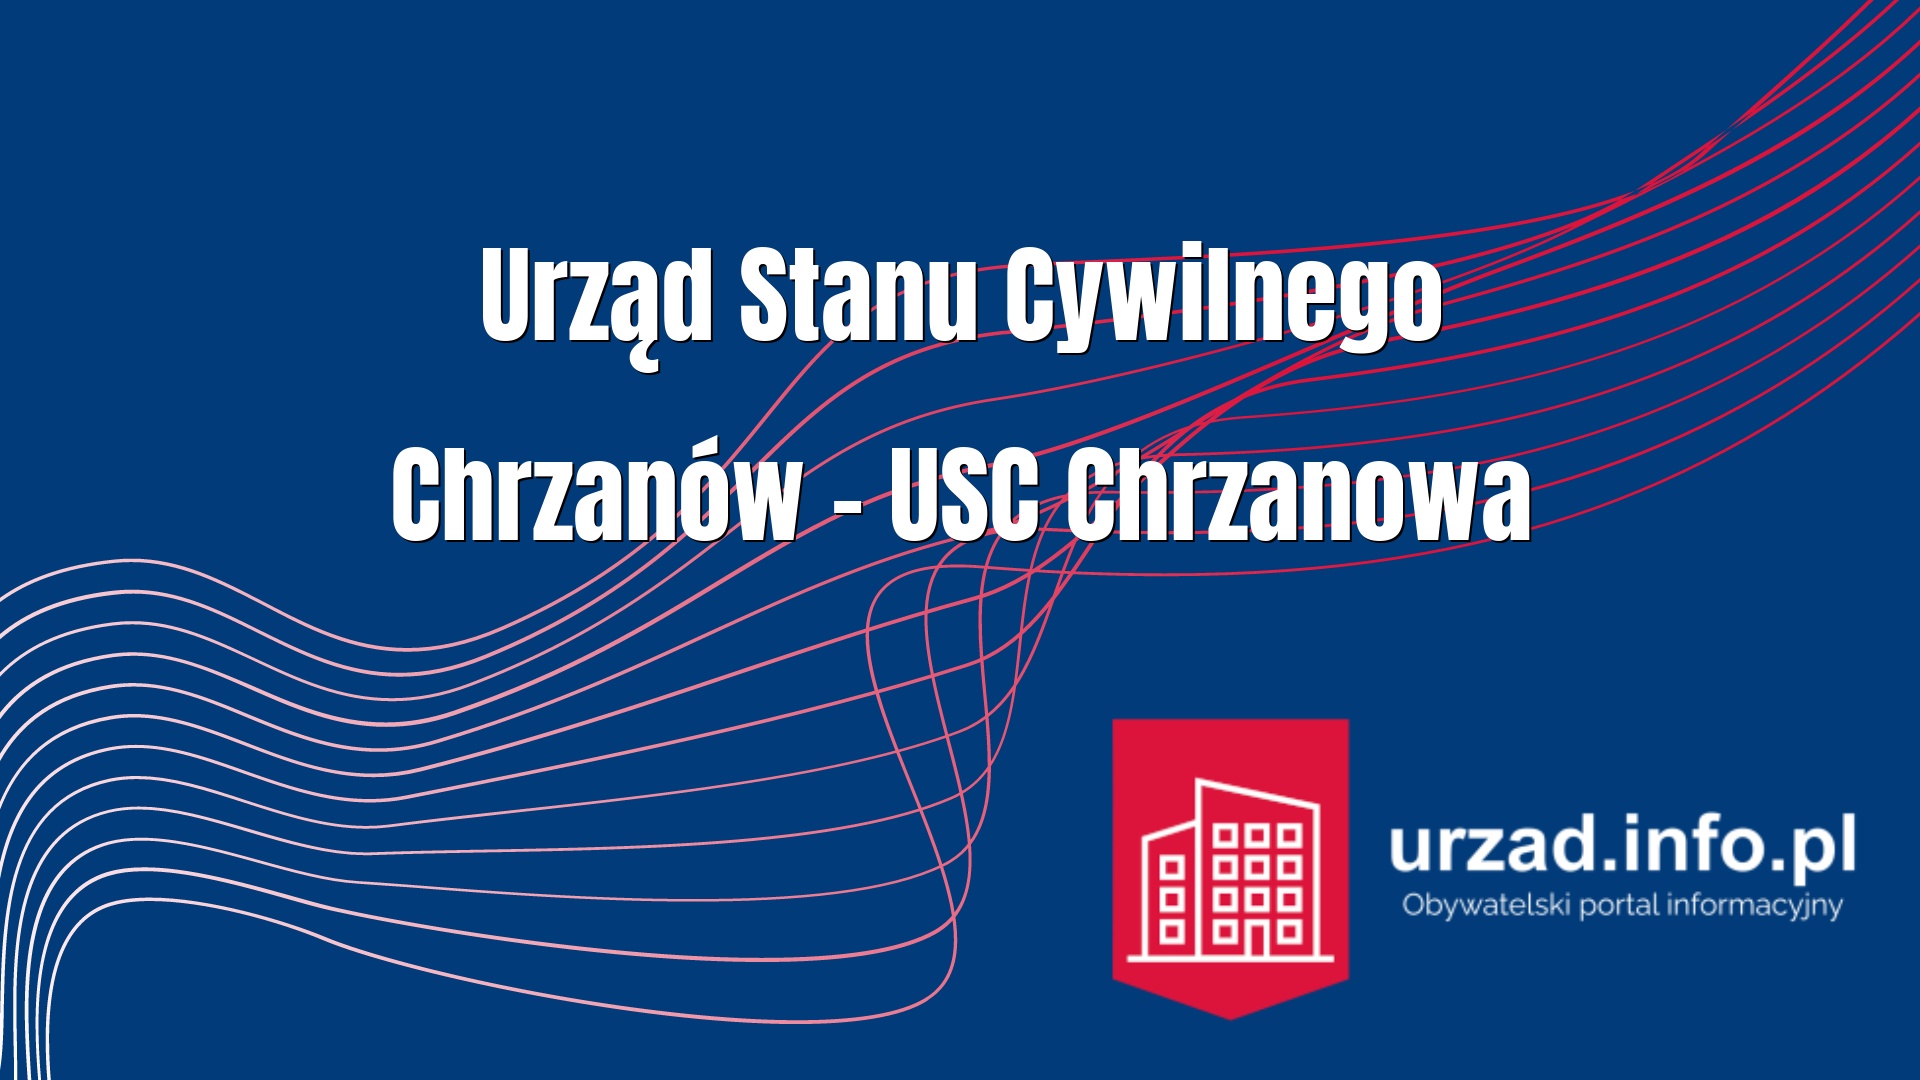 Urząd Stanu Cywilnego Chrzanów – USC Chrzanowa